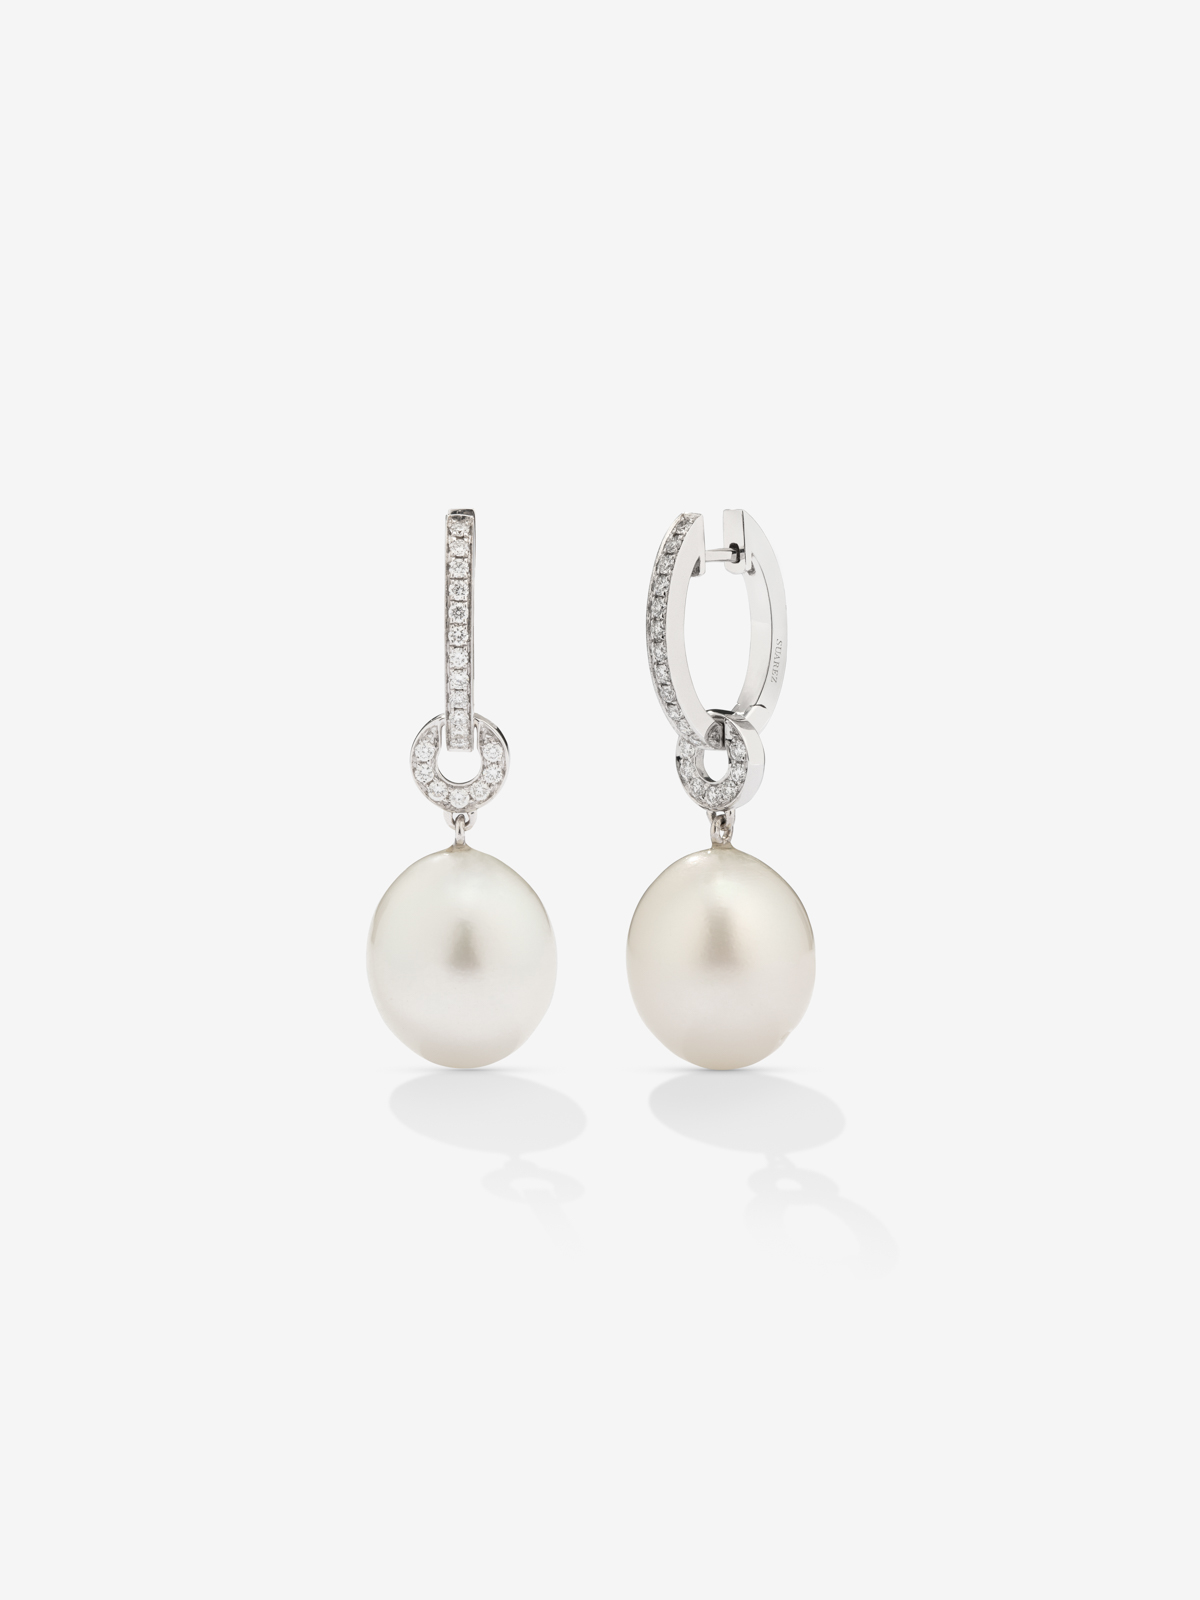 Pendiente de aro de oro blanco de 18k con colgante de perla australiana de 9 mm y diamante